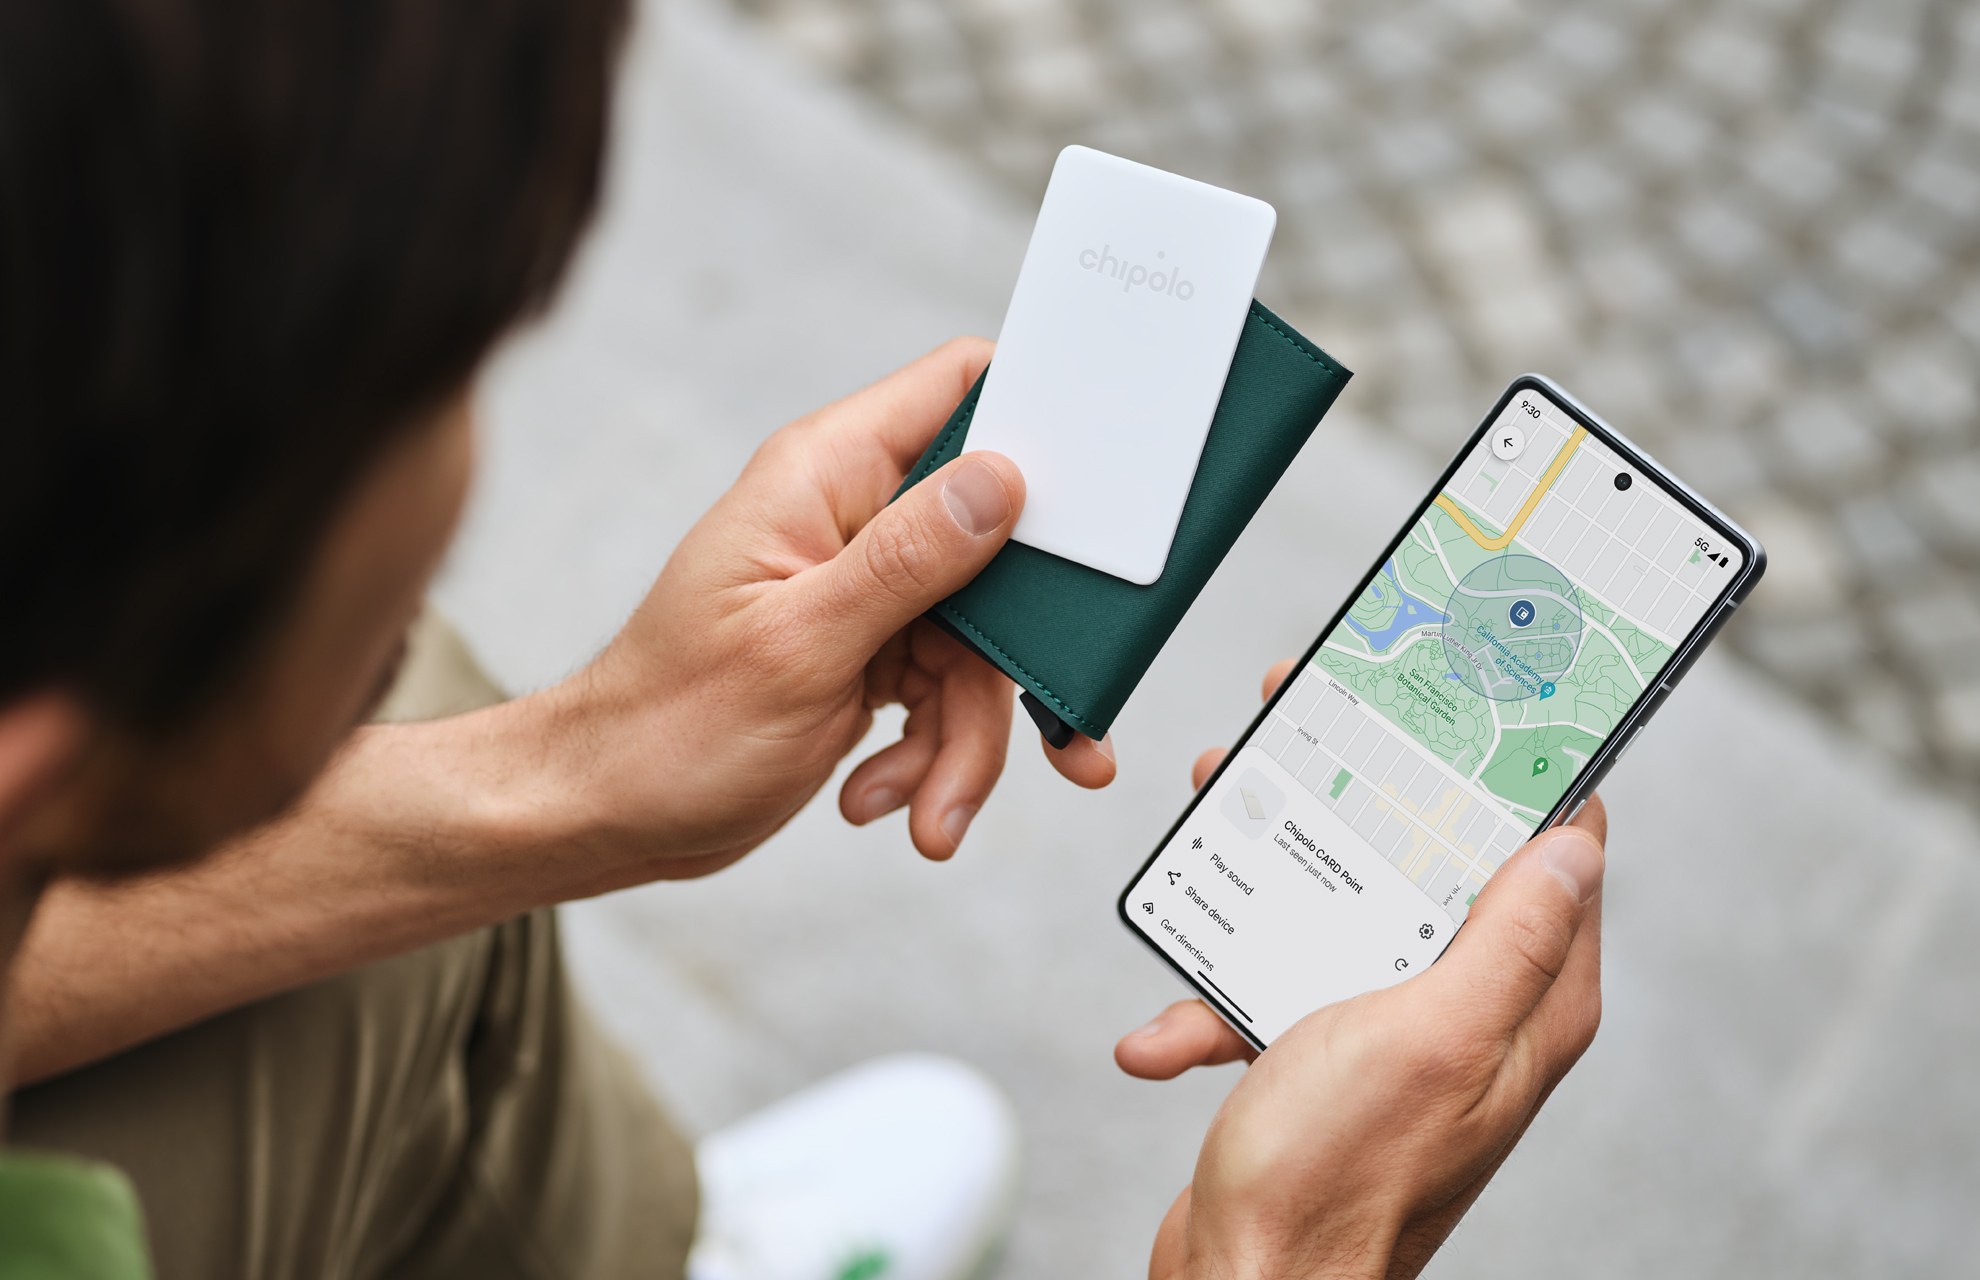 Punto de tarjeta Chipolo junto al teléfono que muestra la aplicación Google Find My Device.